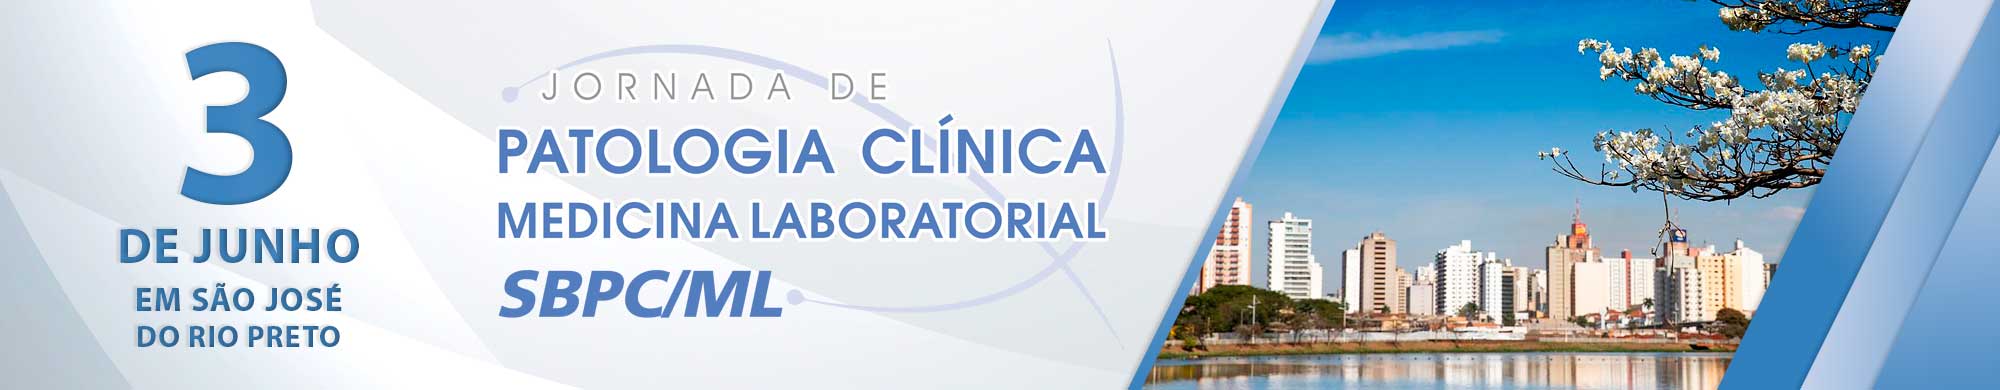 Jornada de Patologia Clinica/Medicina Laboratorial de São José do Rio Preto